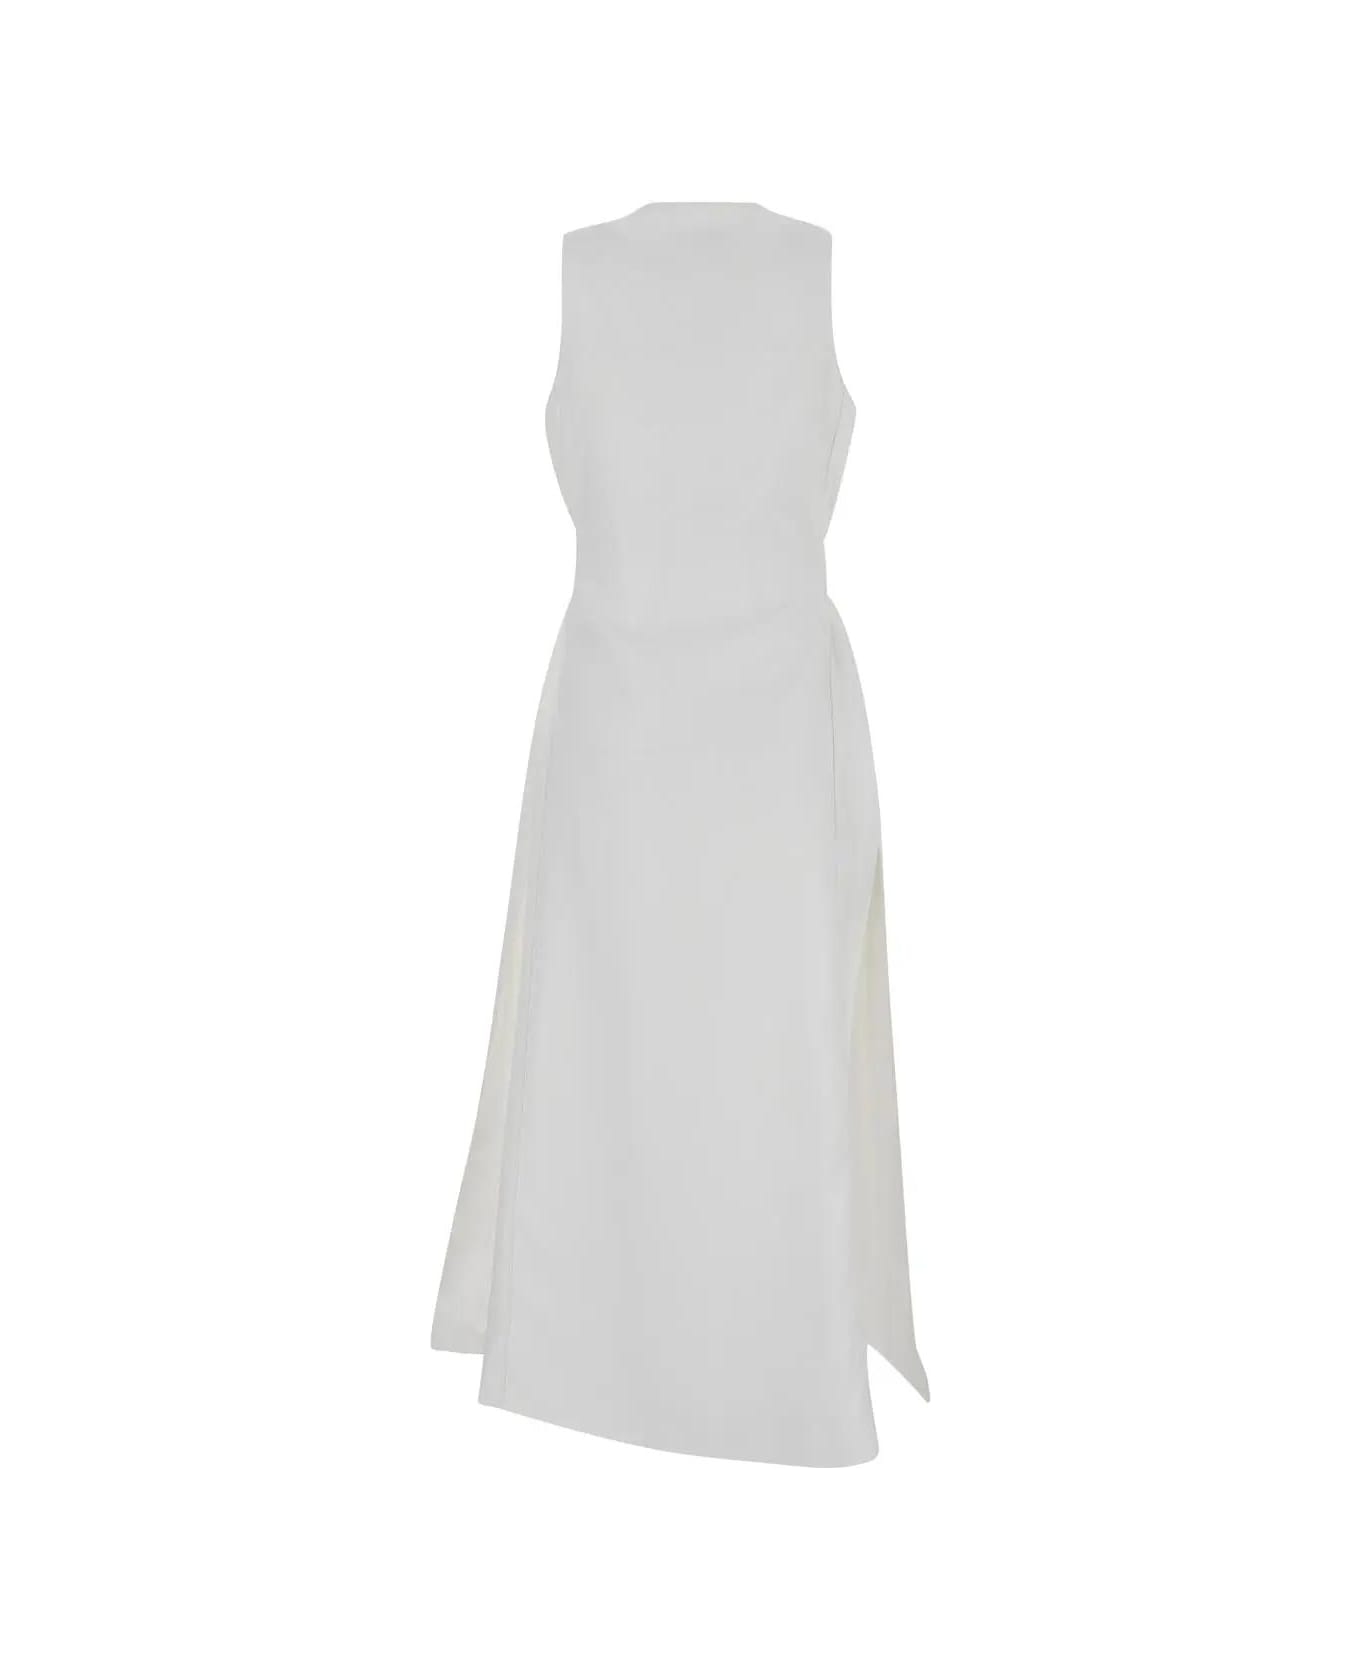 Max Mara Aureo Dress - White